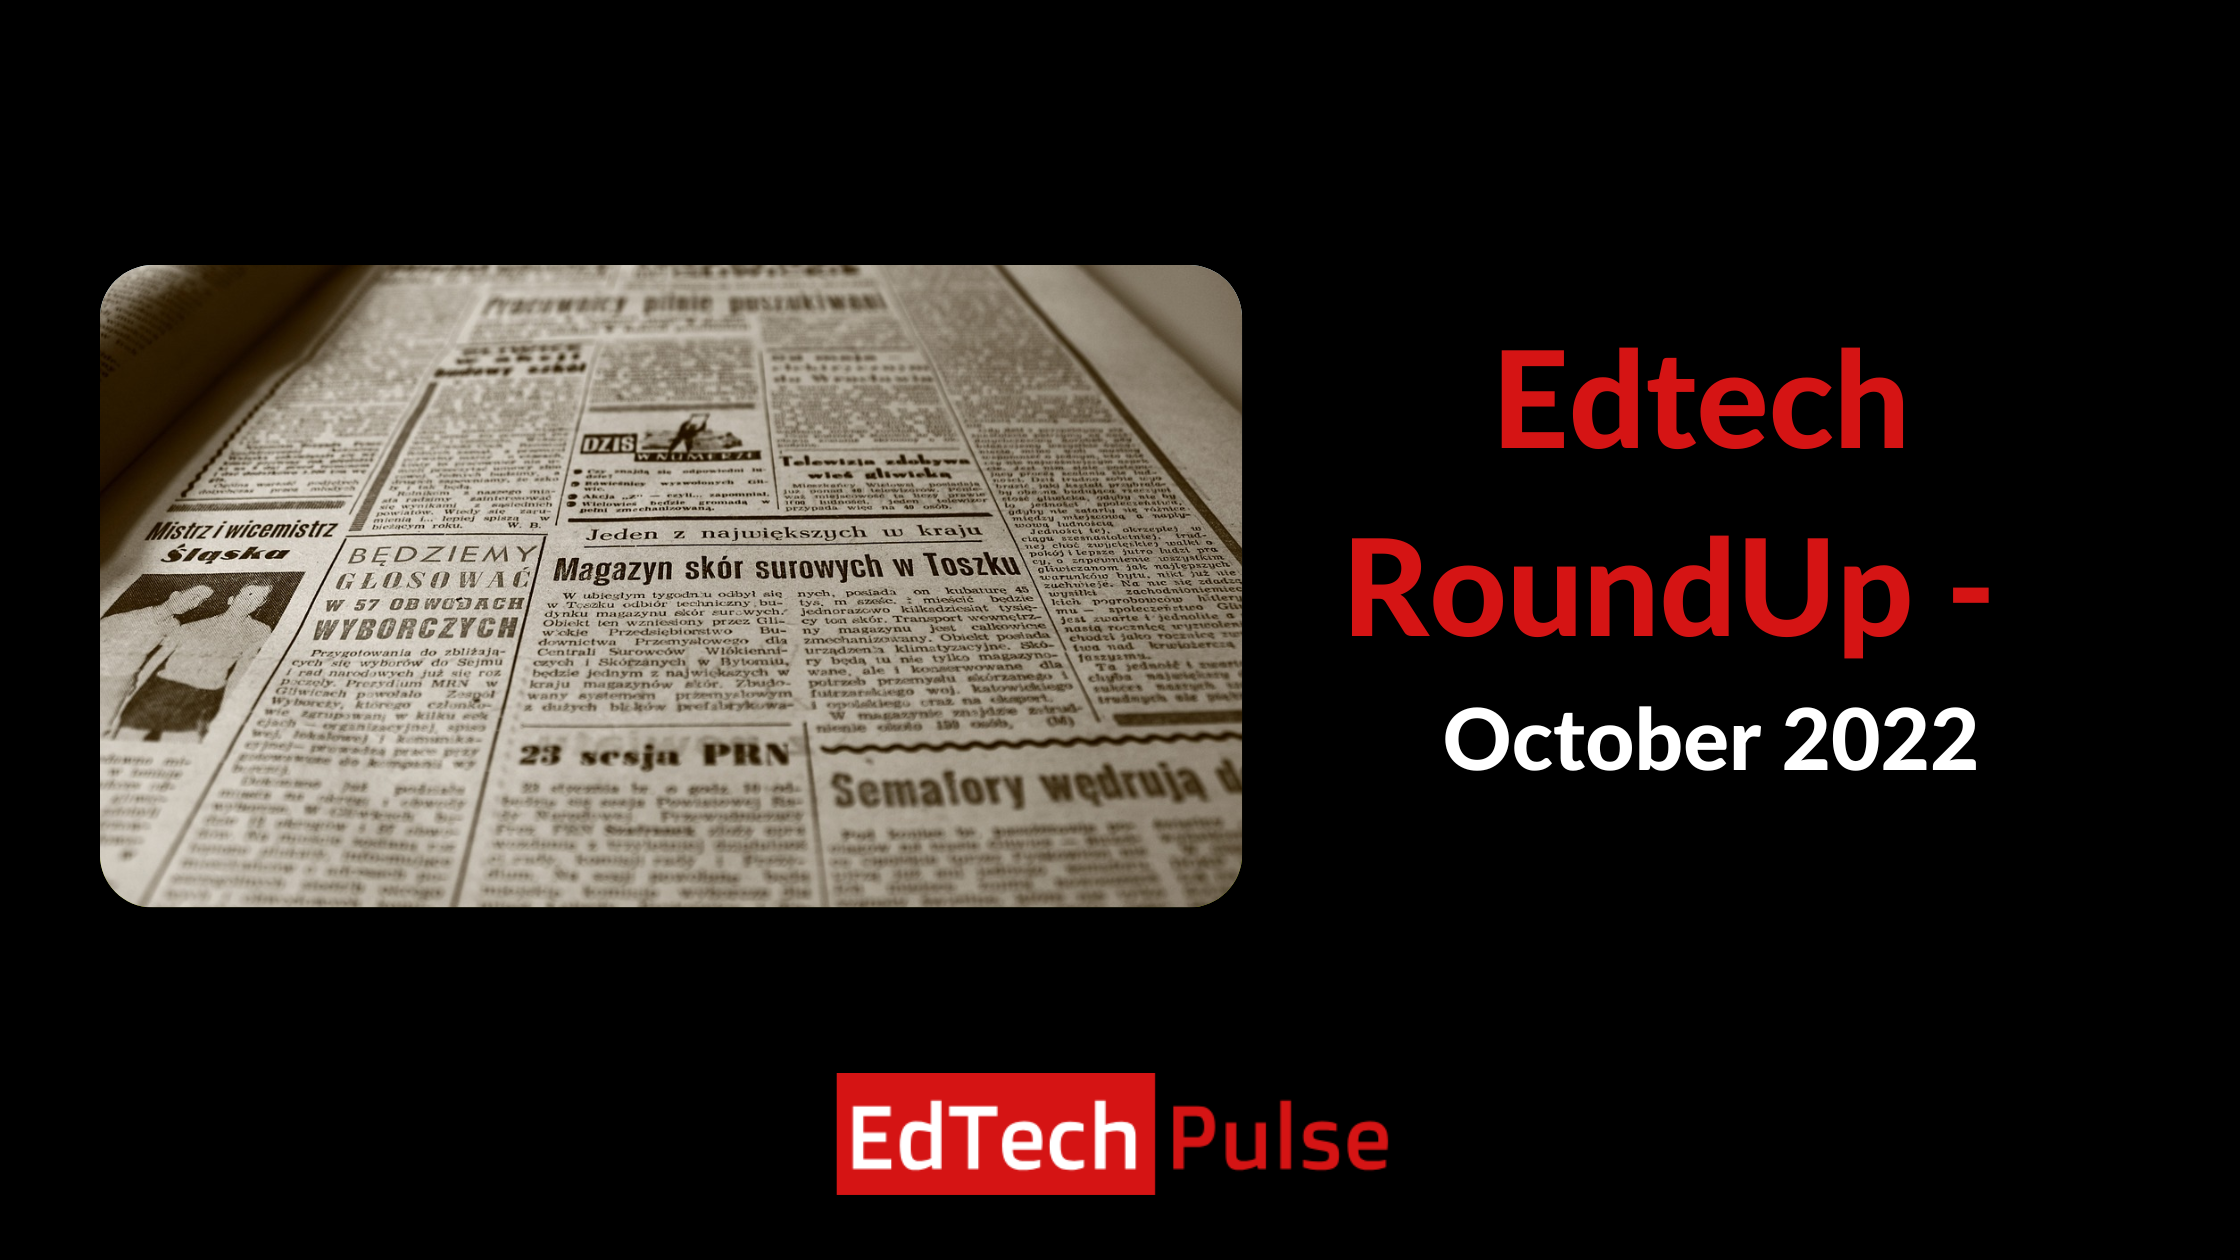 Edtech RoundUp - October 2022